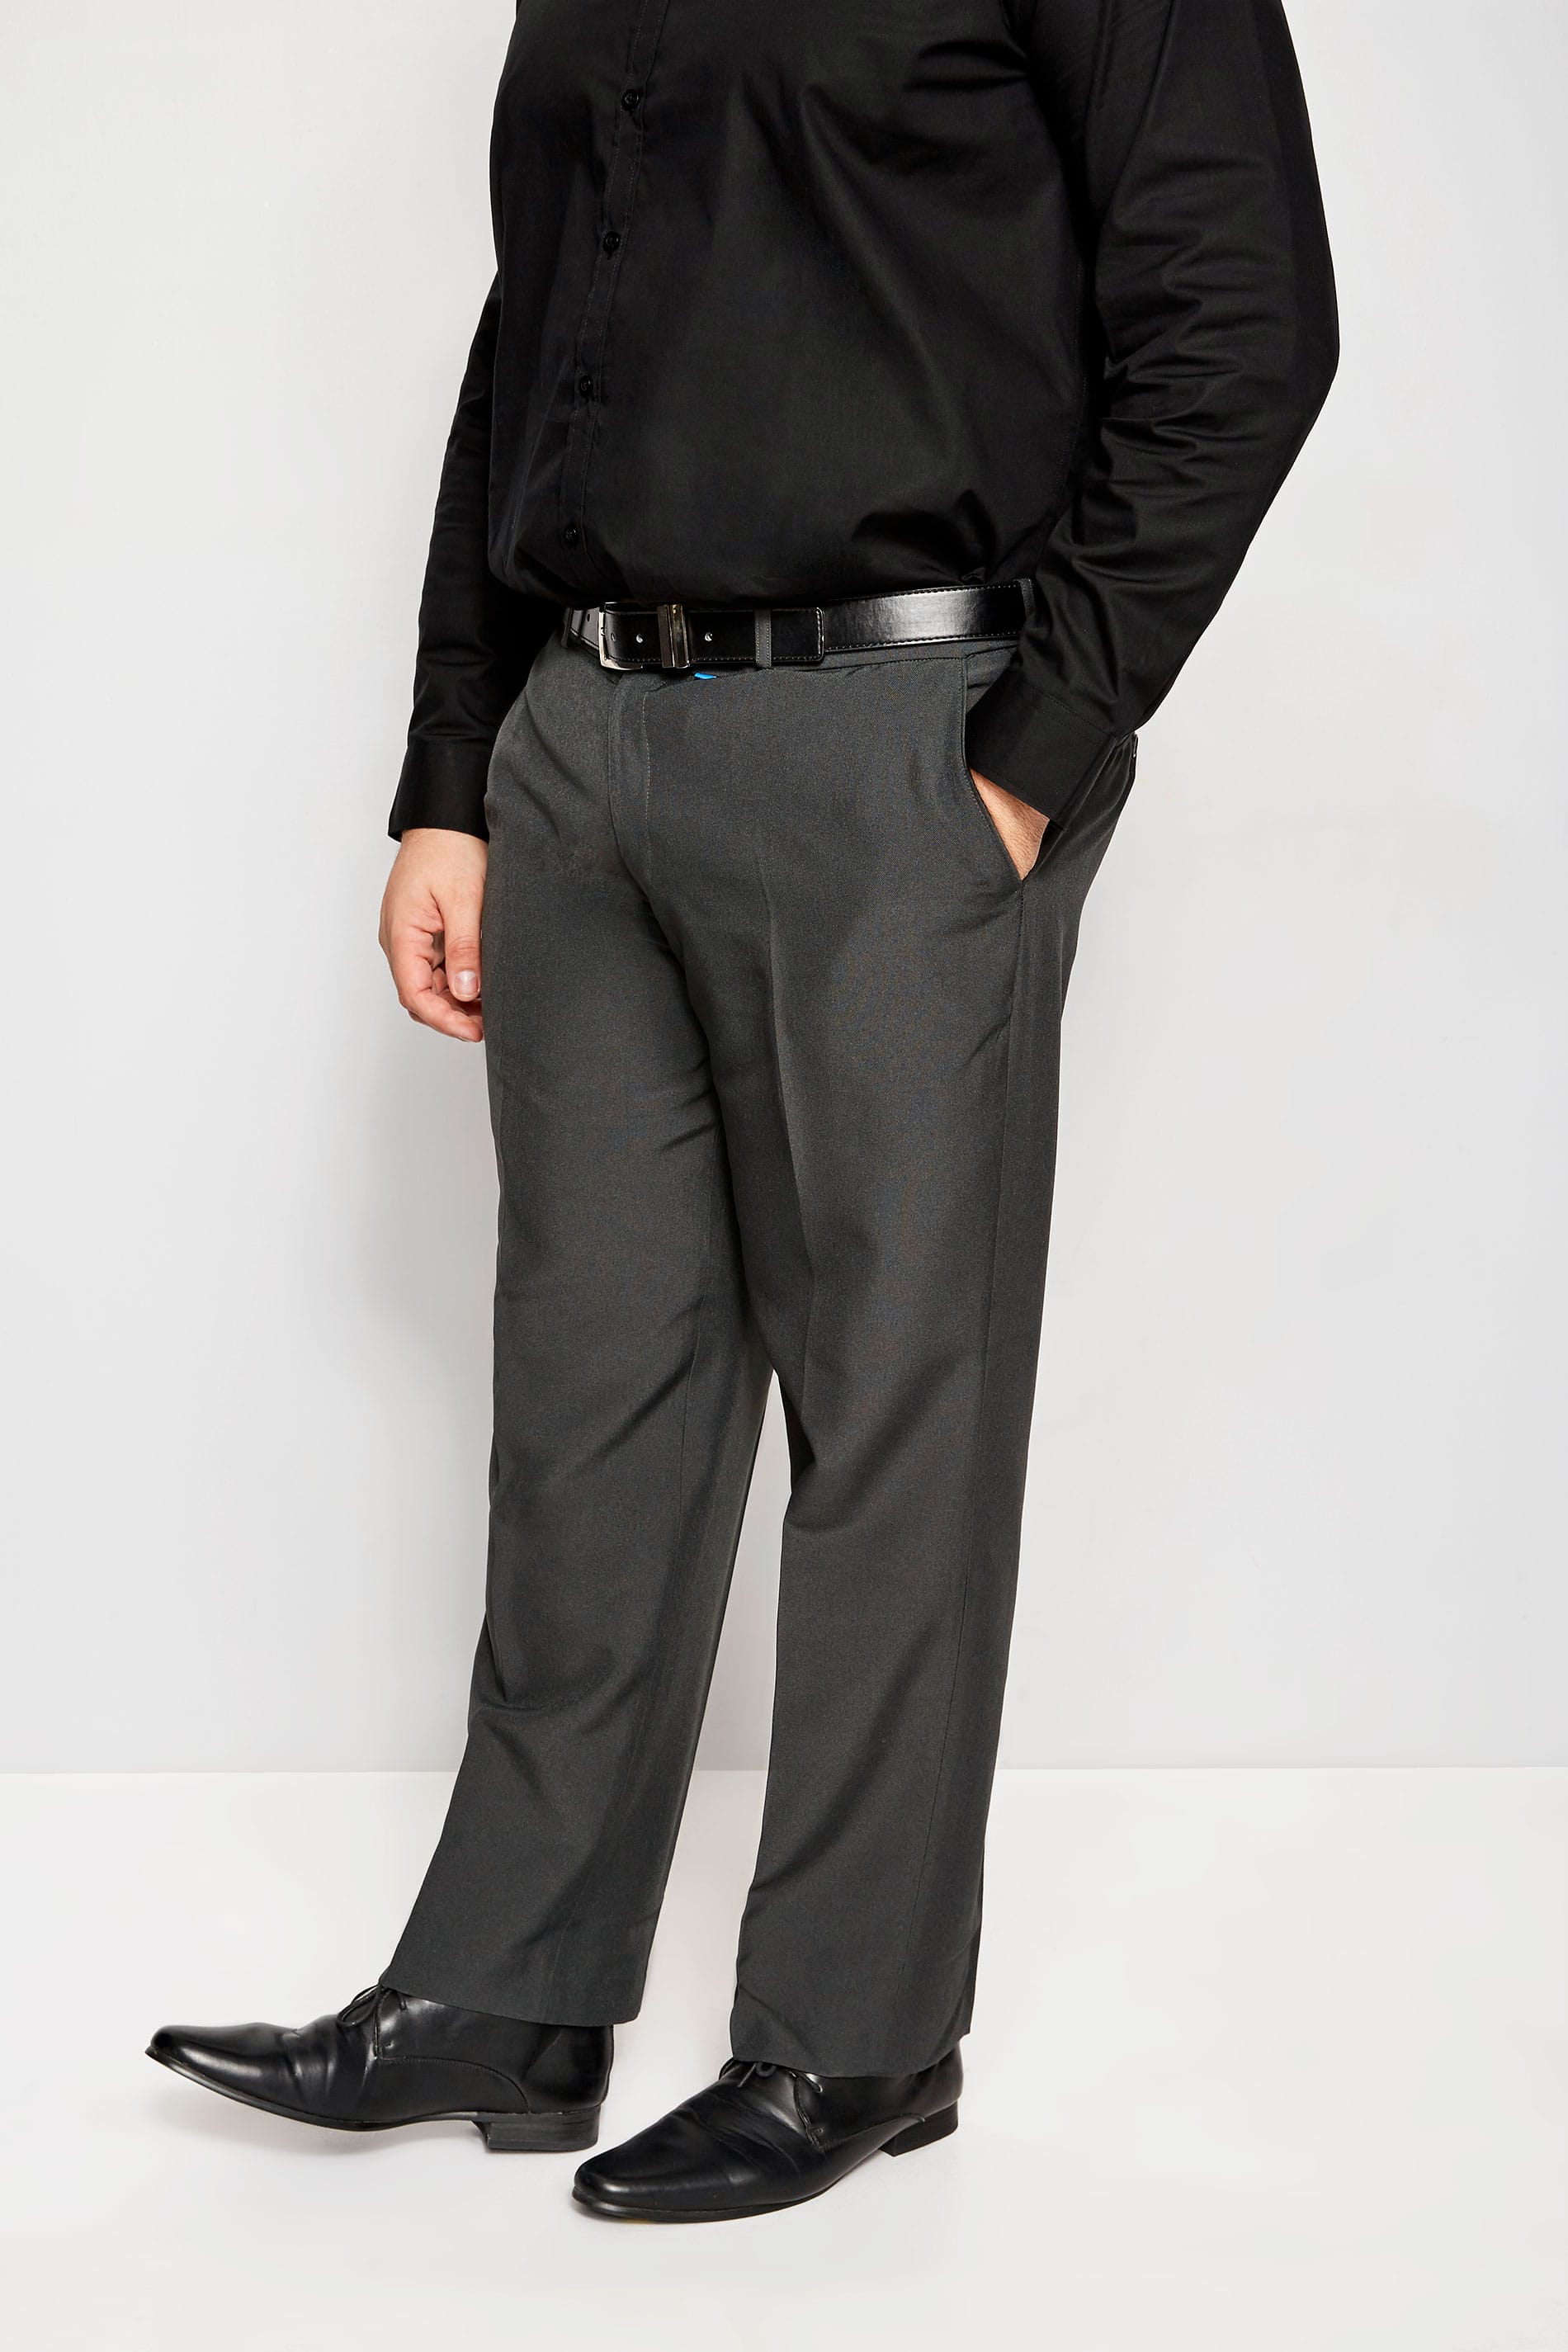 BadRhino Grey Single Pleat Smart Trousers_f394.jpg